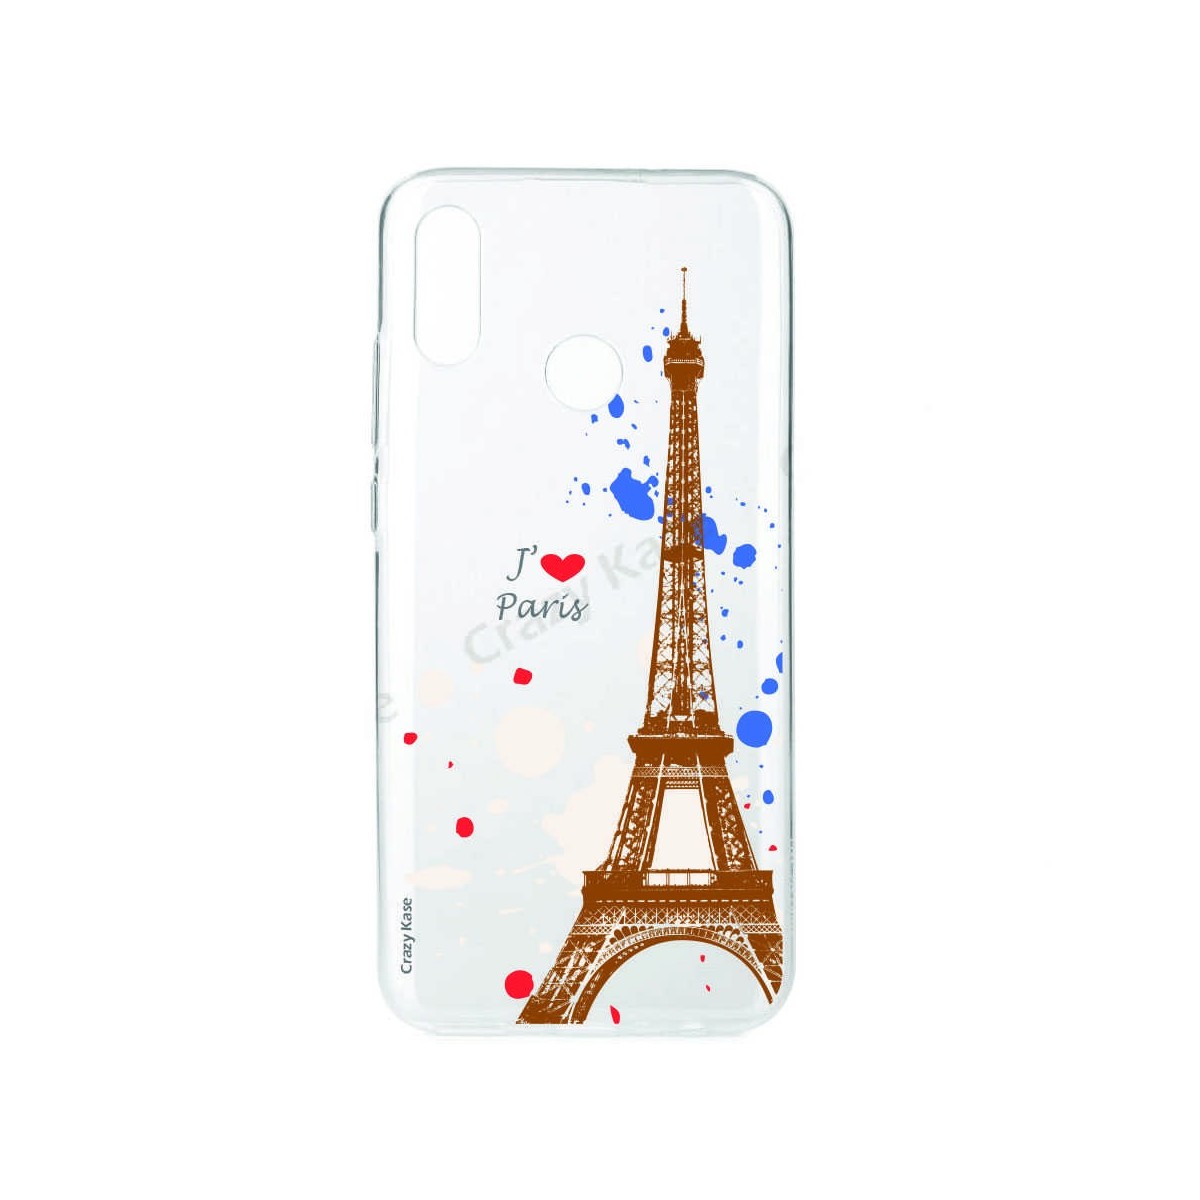 Coque compatible Huawei P Smart 2019 souple Paris -  Crazy Kase